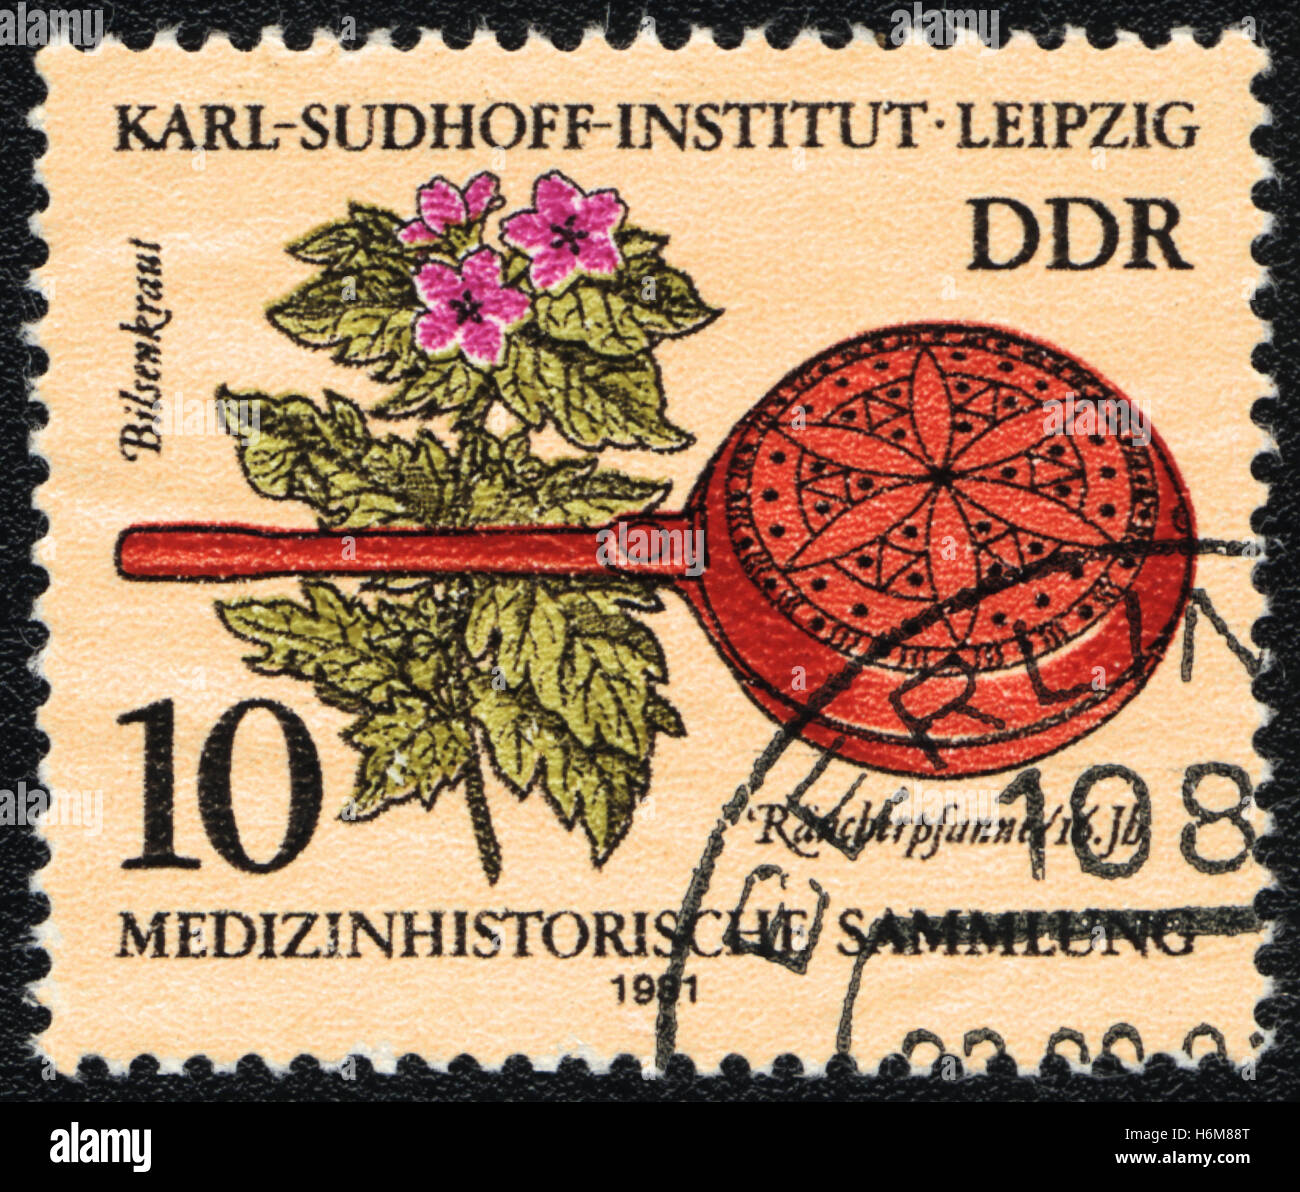 Eine Briefmarke gedruckt in DDR Deutschland zeigt Bilsenkraut und historischen medizinisches Instrument, Karl - Sudhoff-Institut, Leipzig, 1981 Stockfoto